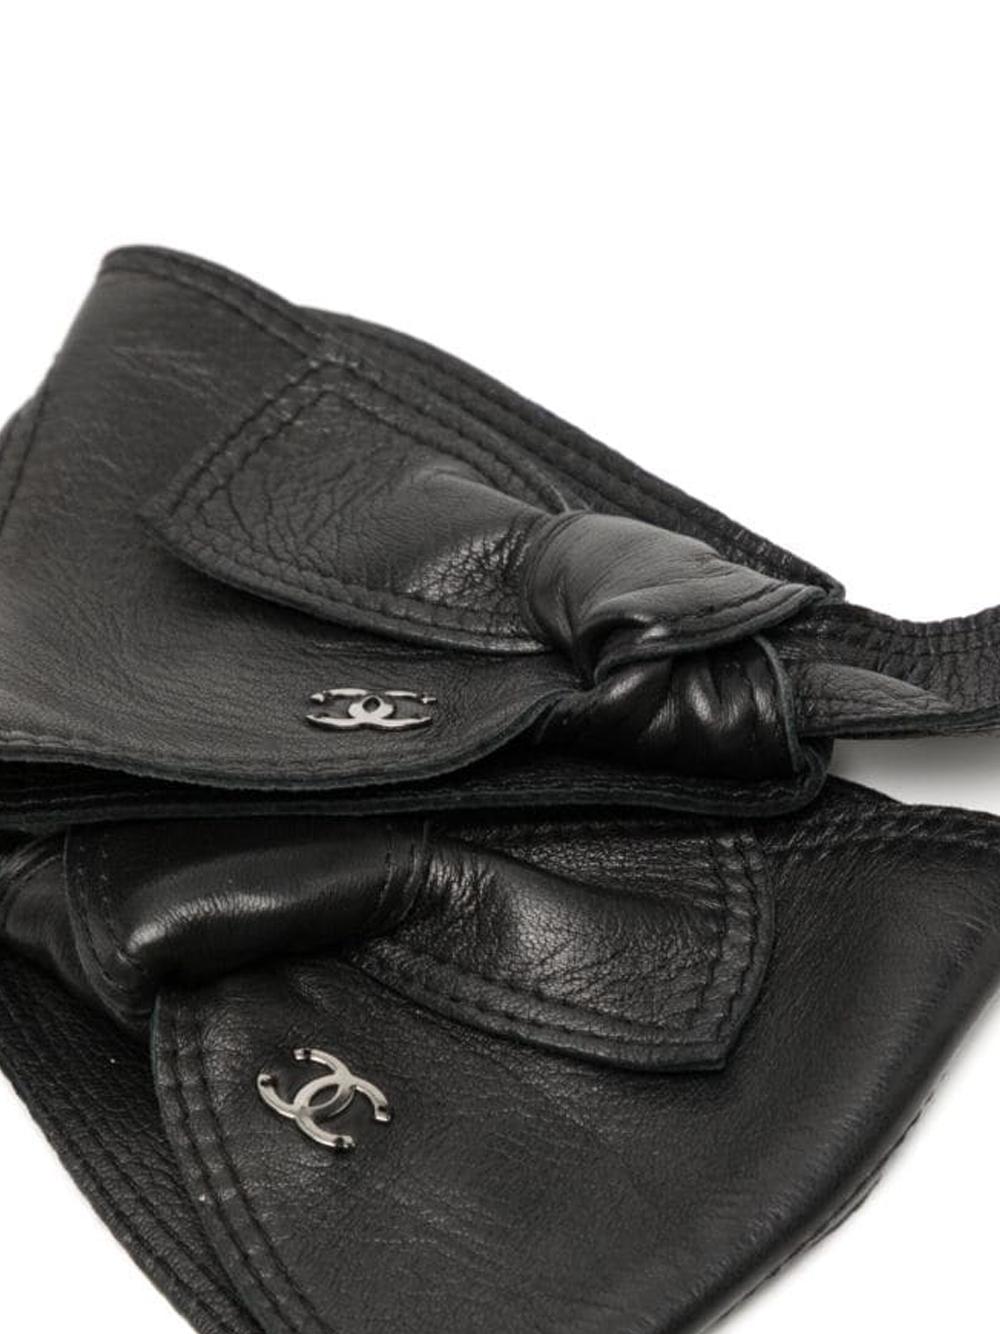 Women's or Men's Chanel Black Bow Fingerless Gloves 